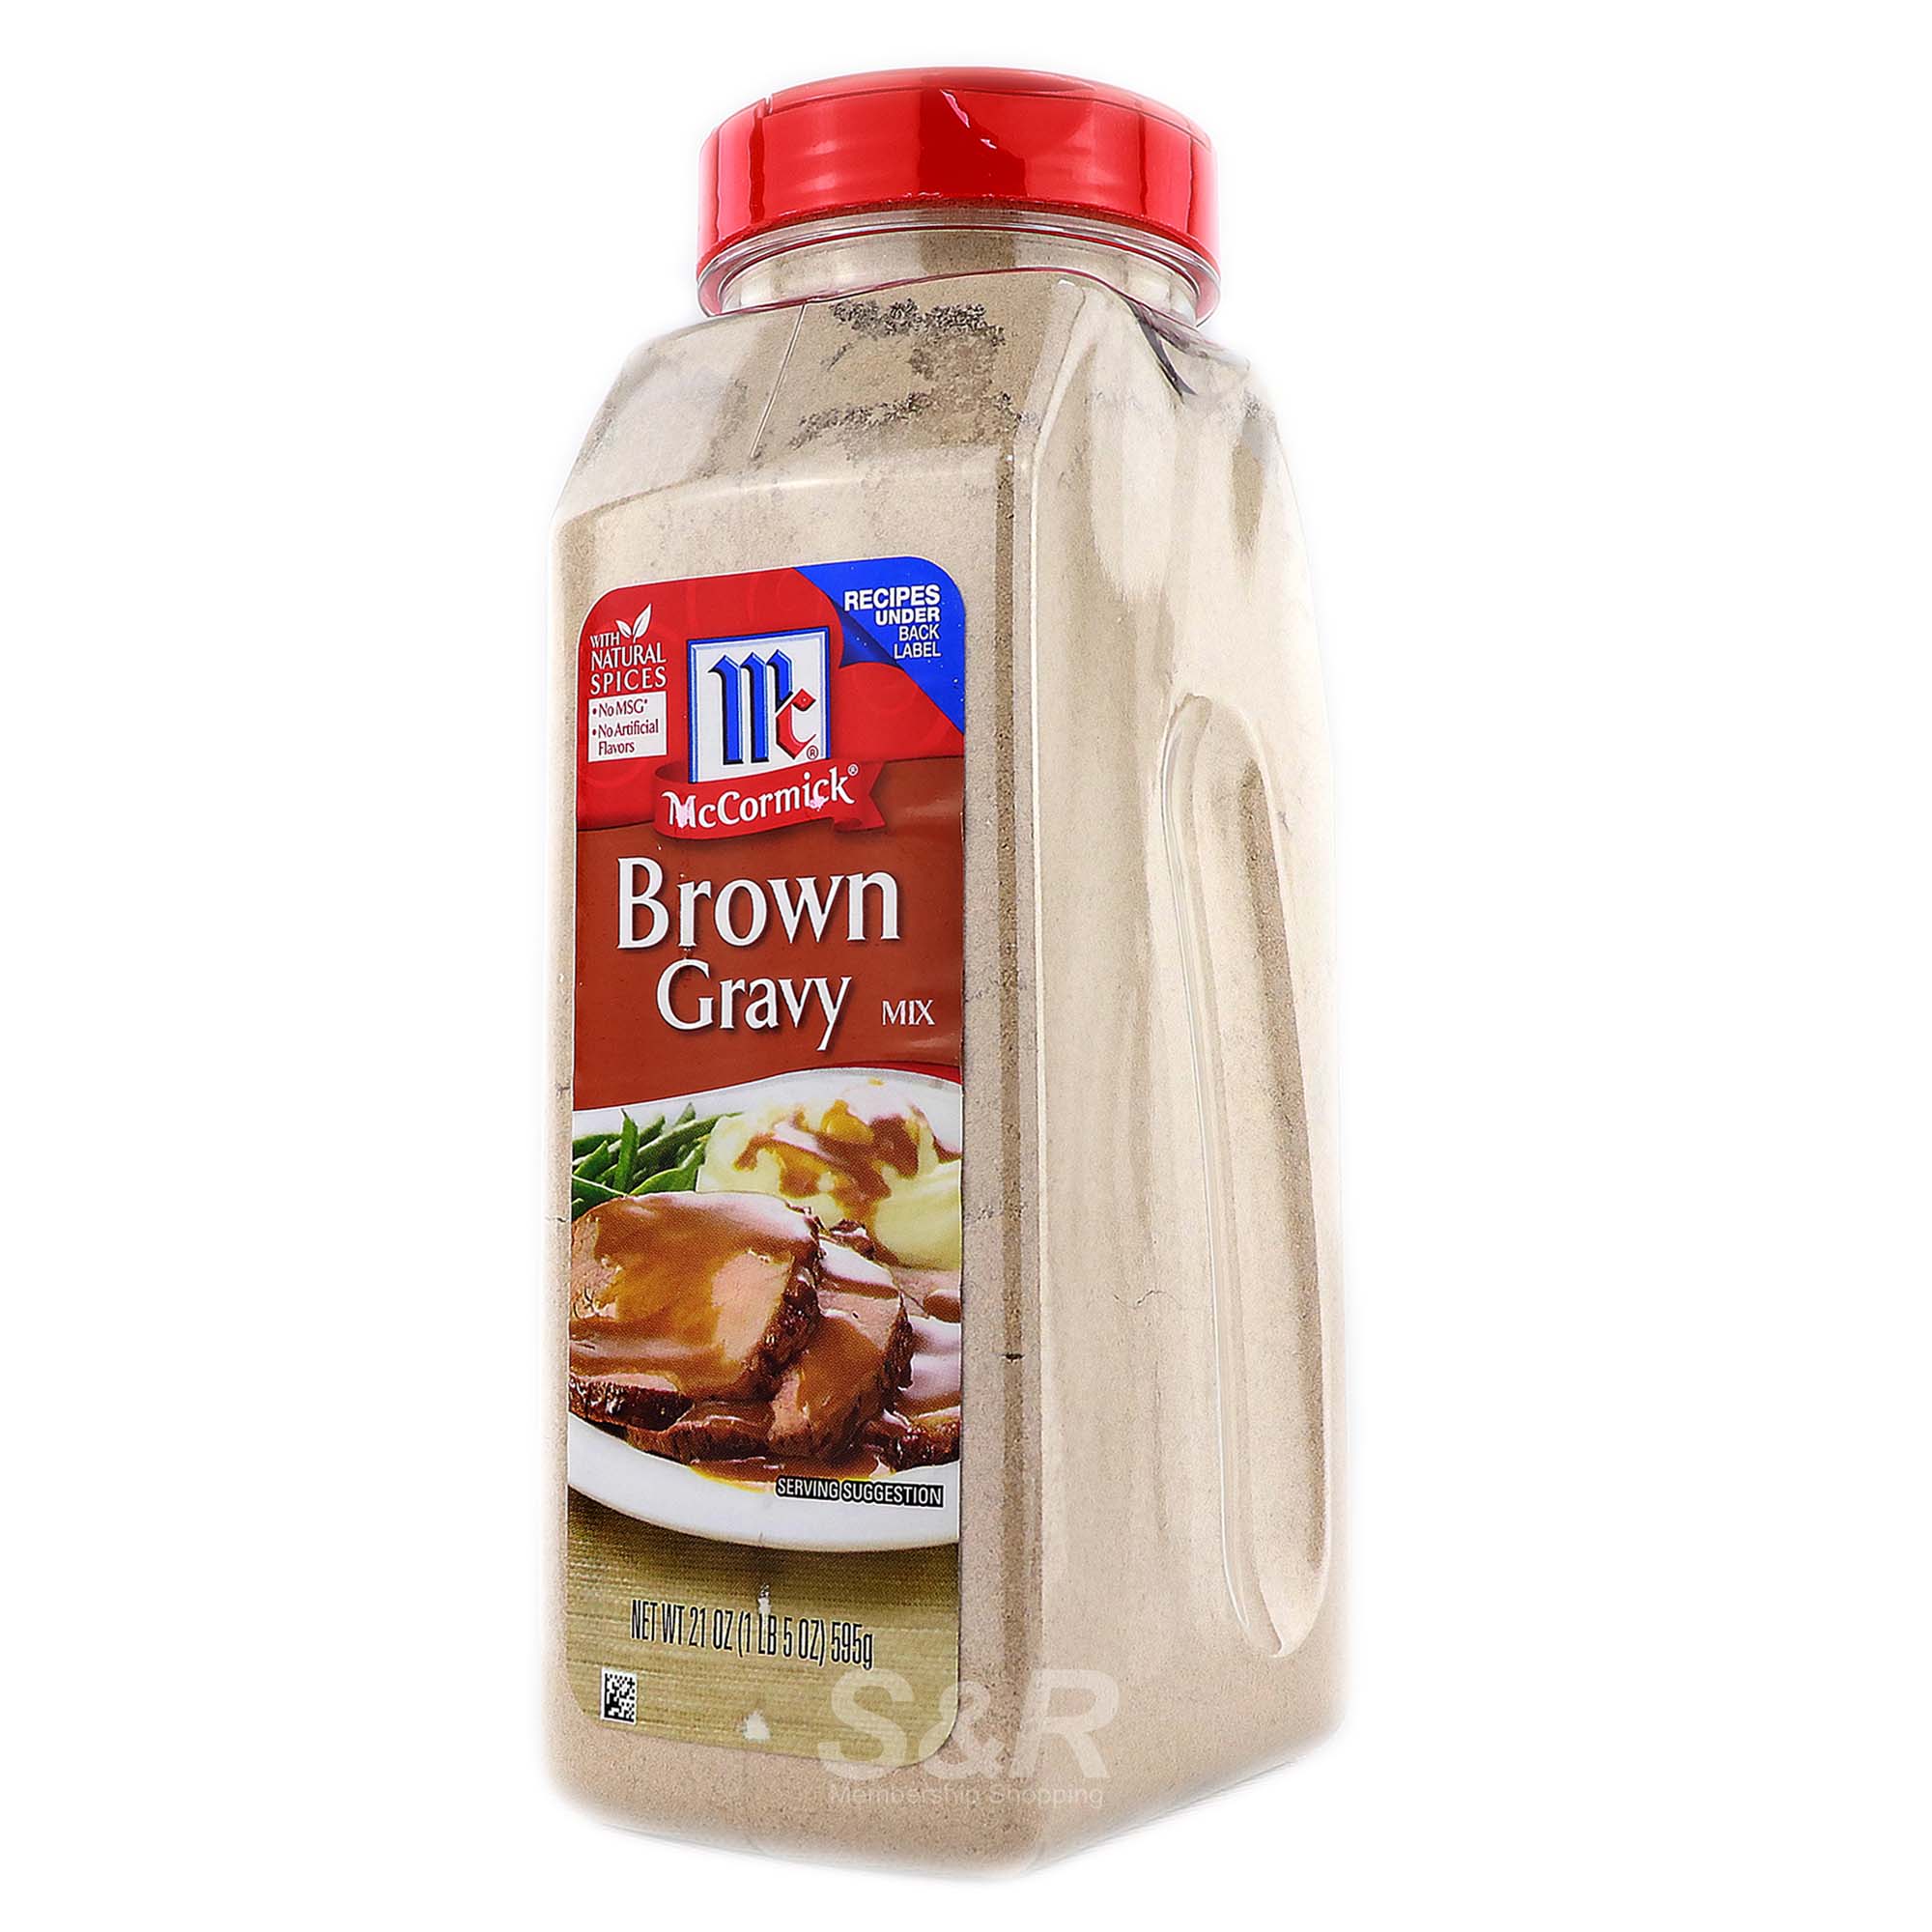 Brown Gravy Mix